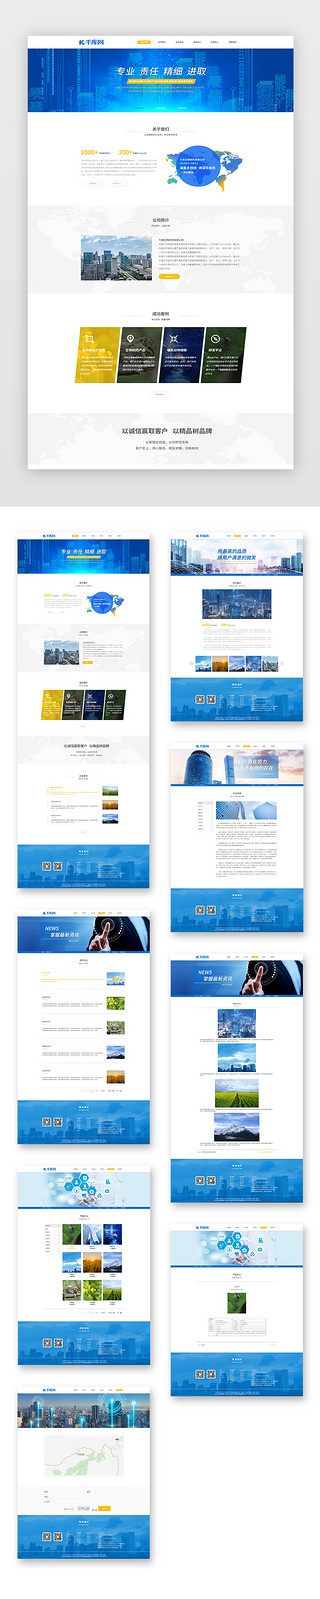 医学研究室UI设计素材_蓝色通用简约生物药物研究企业网站套图